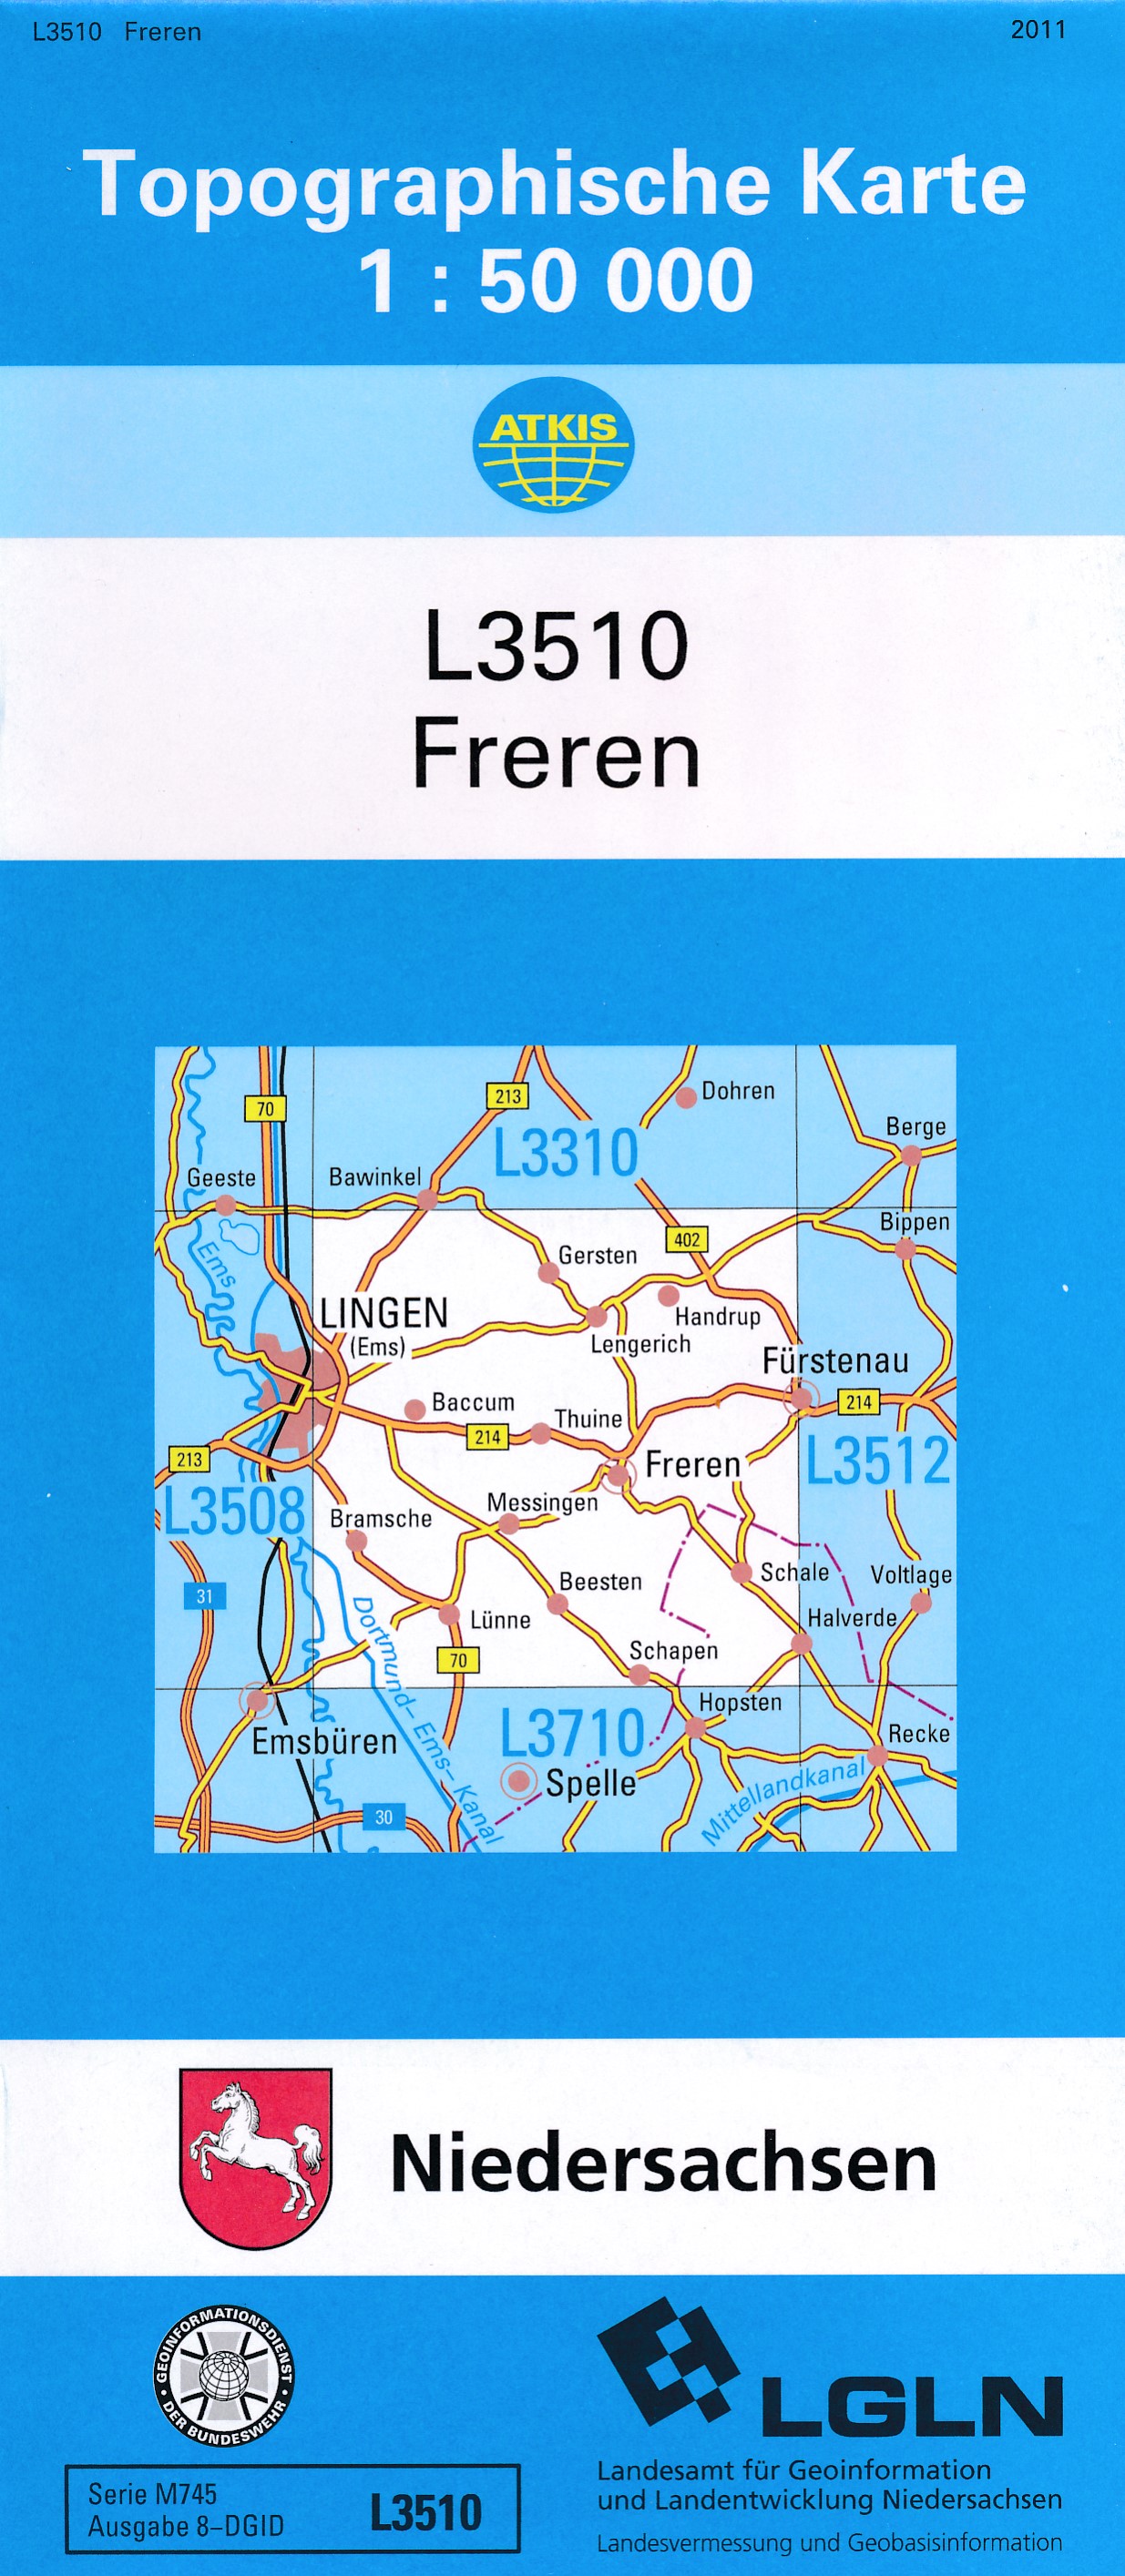 Topografische kaart L3510 Freren | LGN de zwerver